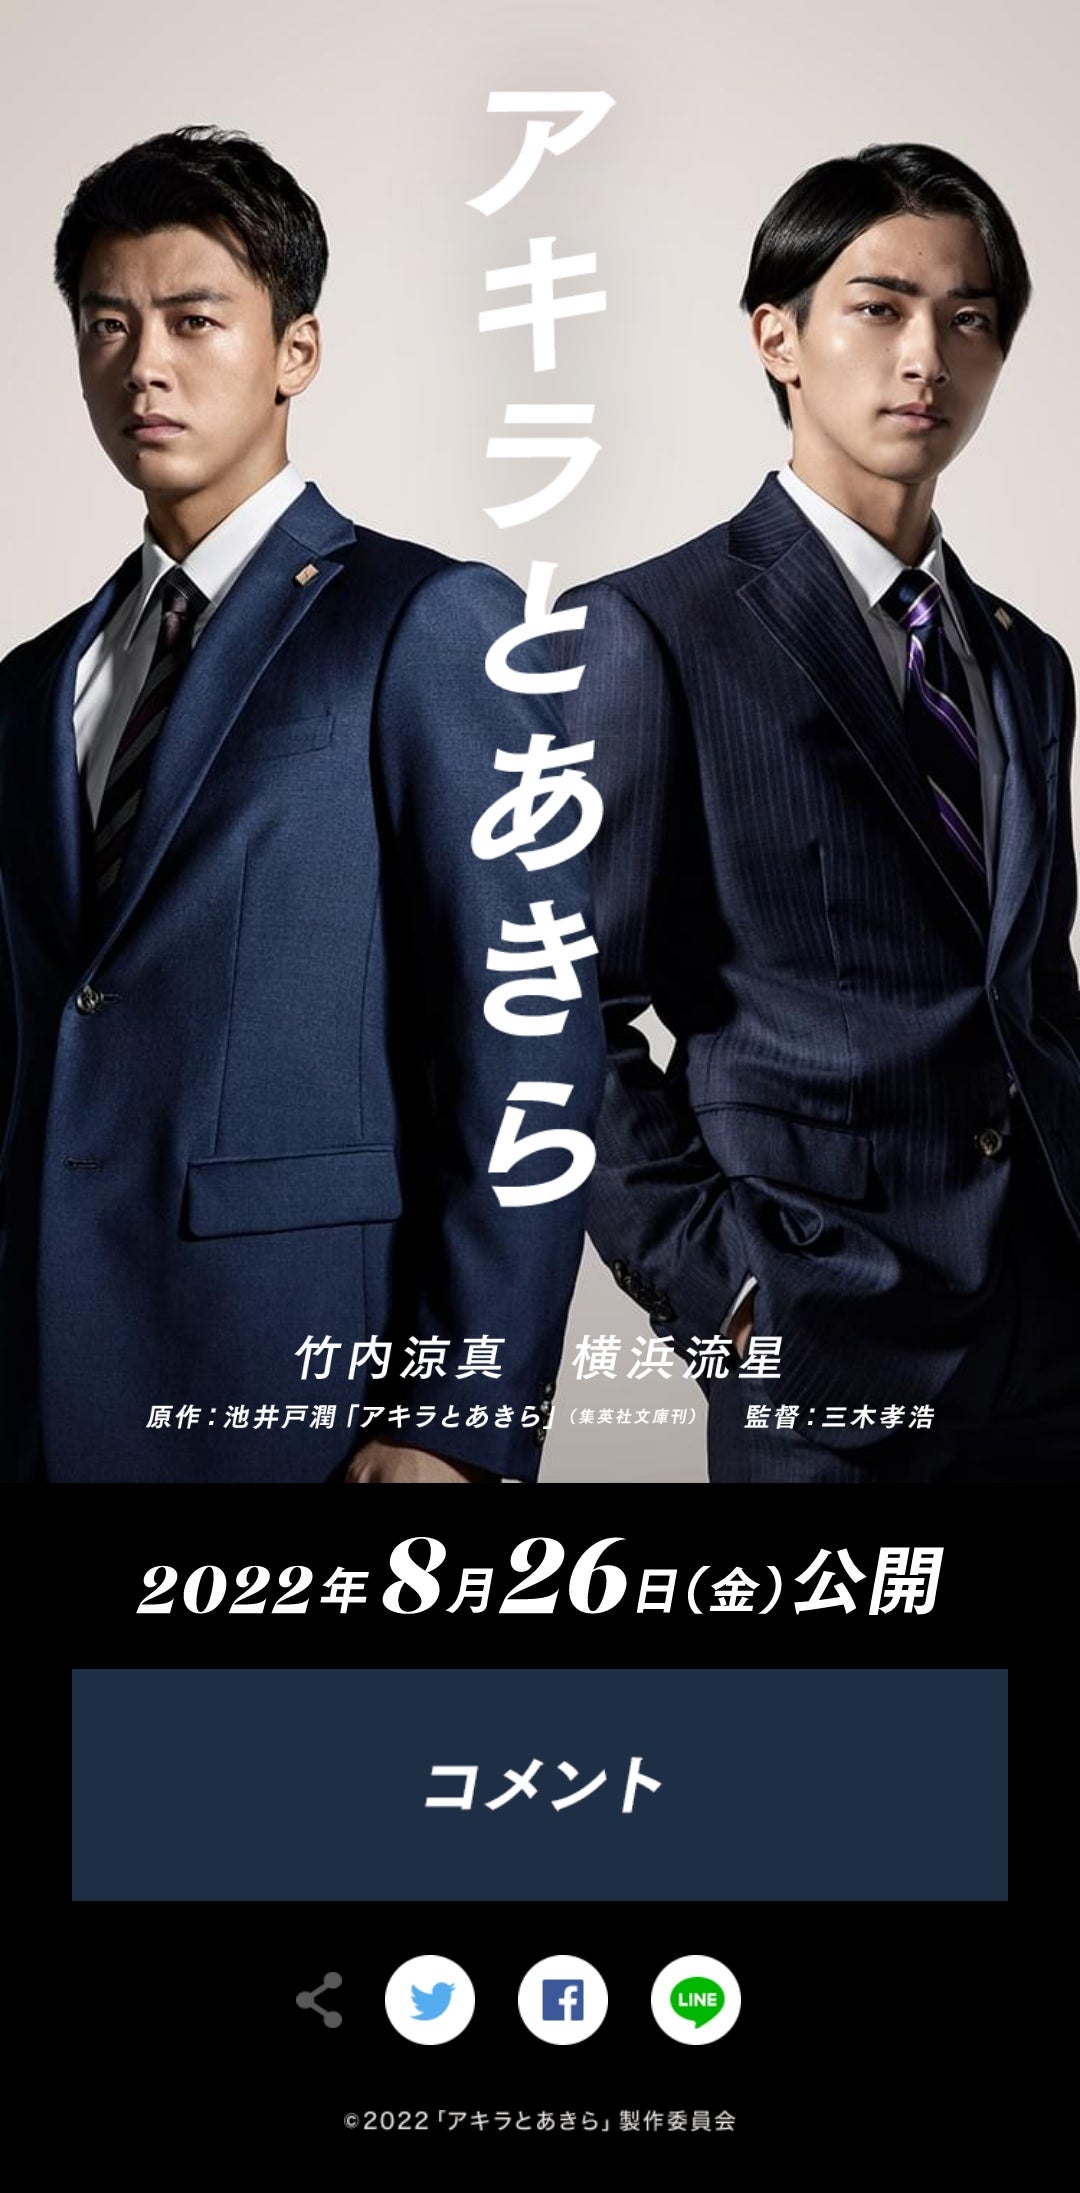 映画「アキラとあきら」公開日は2022年8月26日 竹内涼真・横浜流星